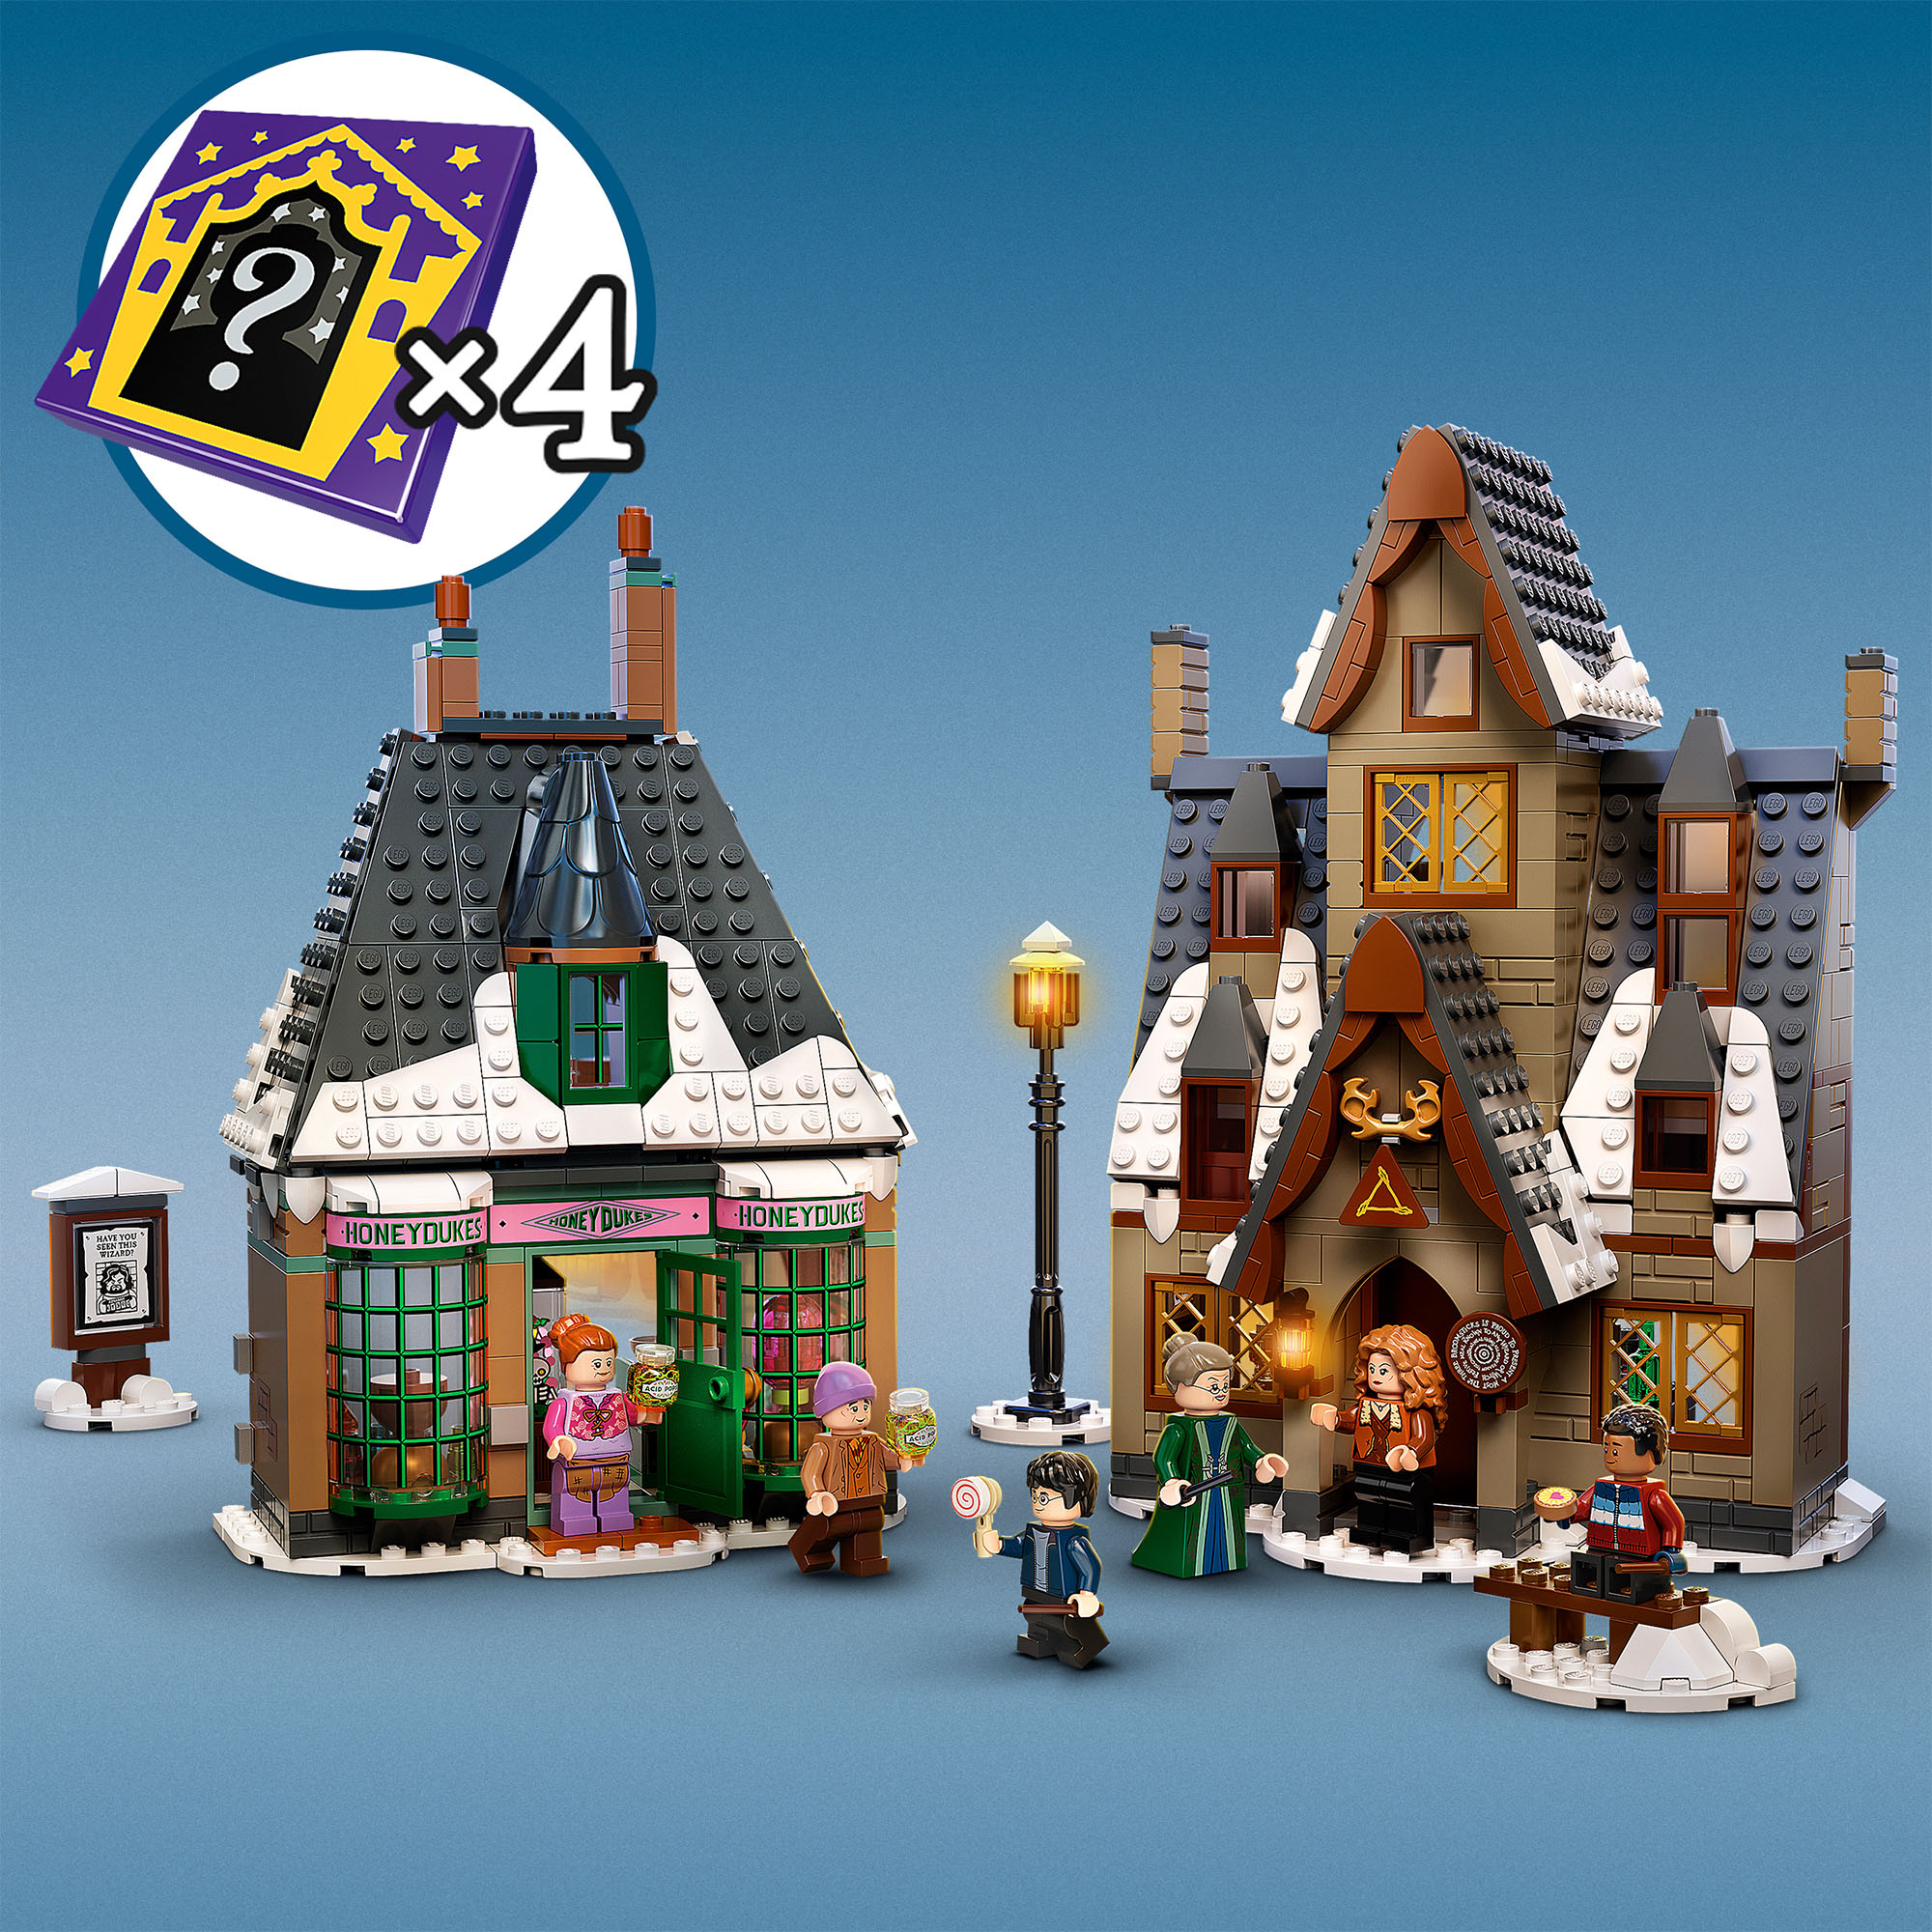 LEGO Harry Potter Visita al Villaggio Di Hogsmeade, Set Giocattoli per Bambini, 76388, , large